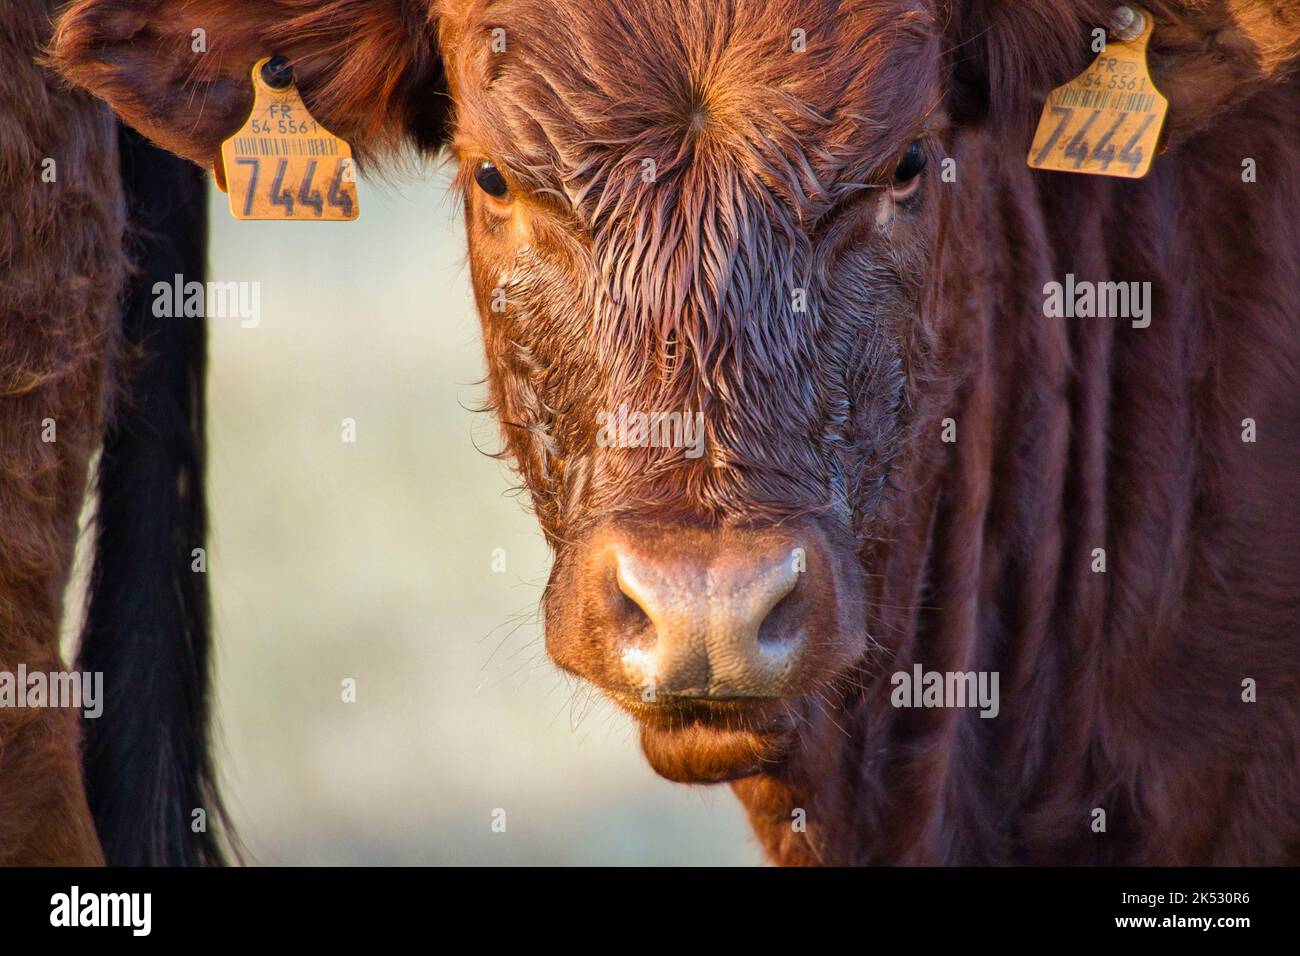 Francia, Meurthe-et-Moselle (54), Campagna della Lorena, vitello Limousin Foto Stock